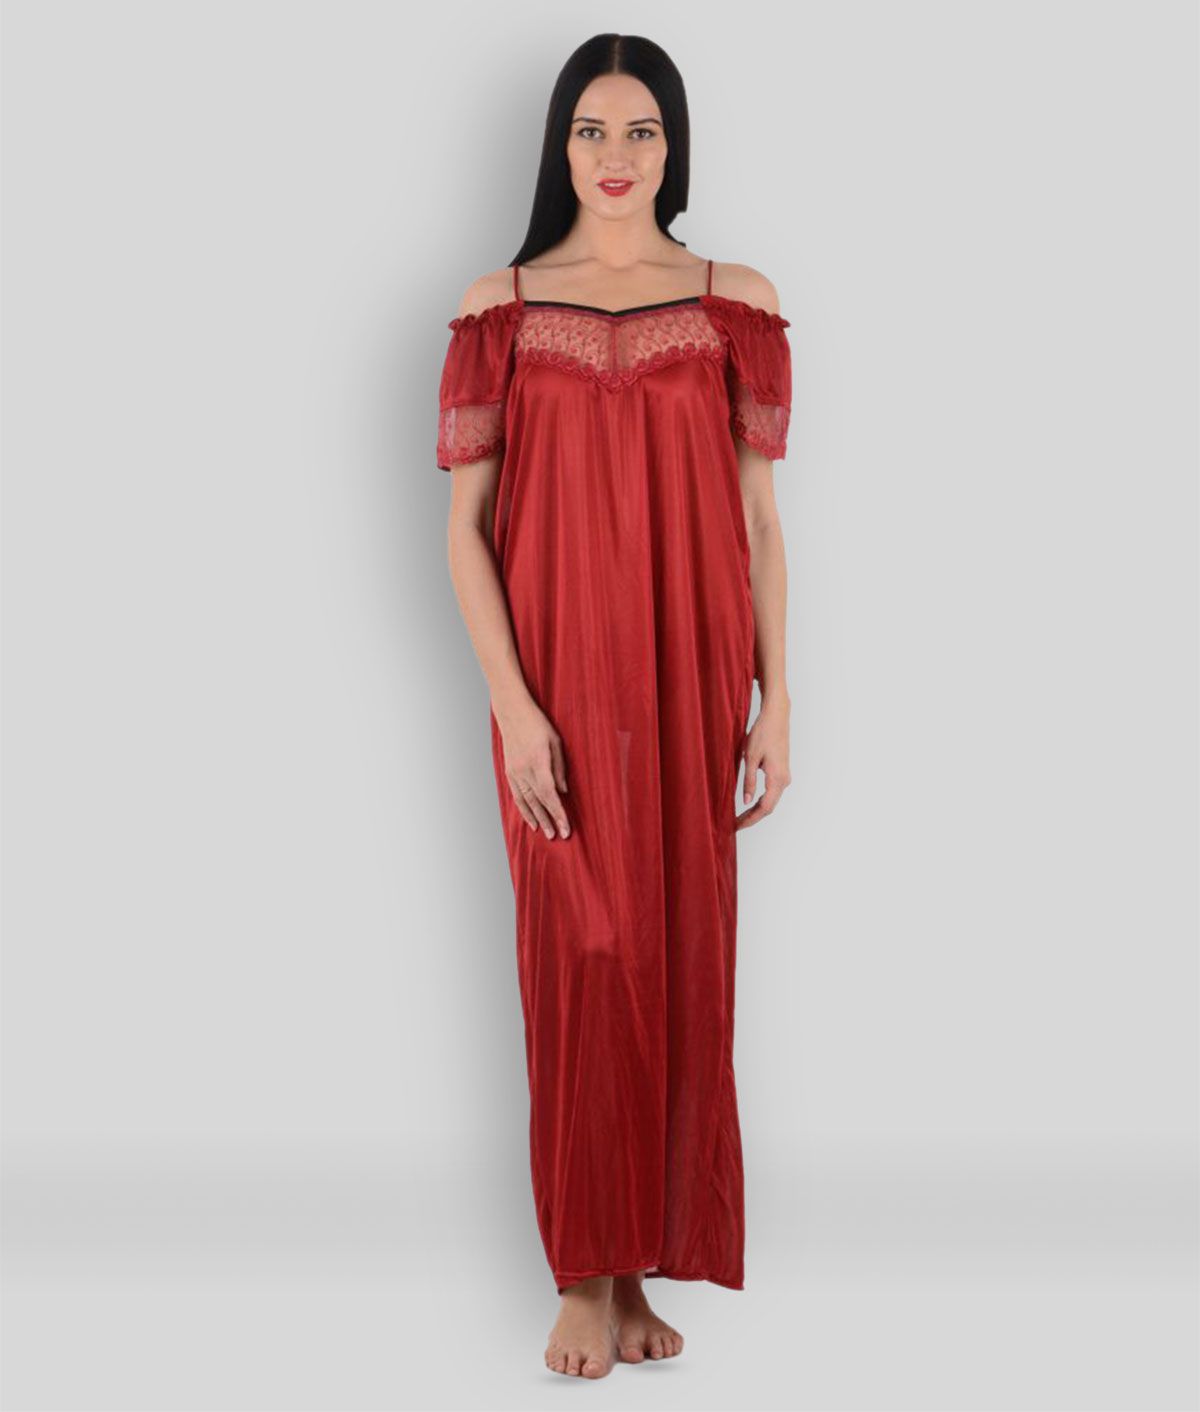     			Klamotten - Red Satin Women's Nightwear Nighty & Night Gowns ( Pack of 1 )